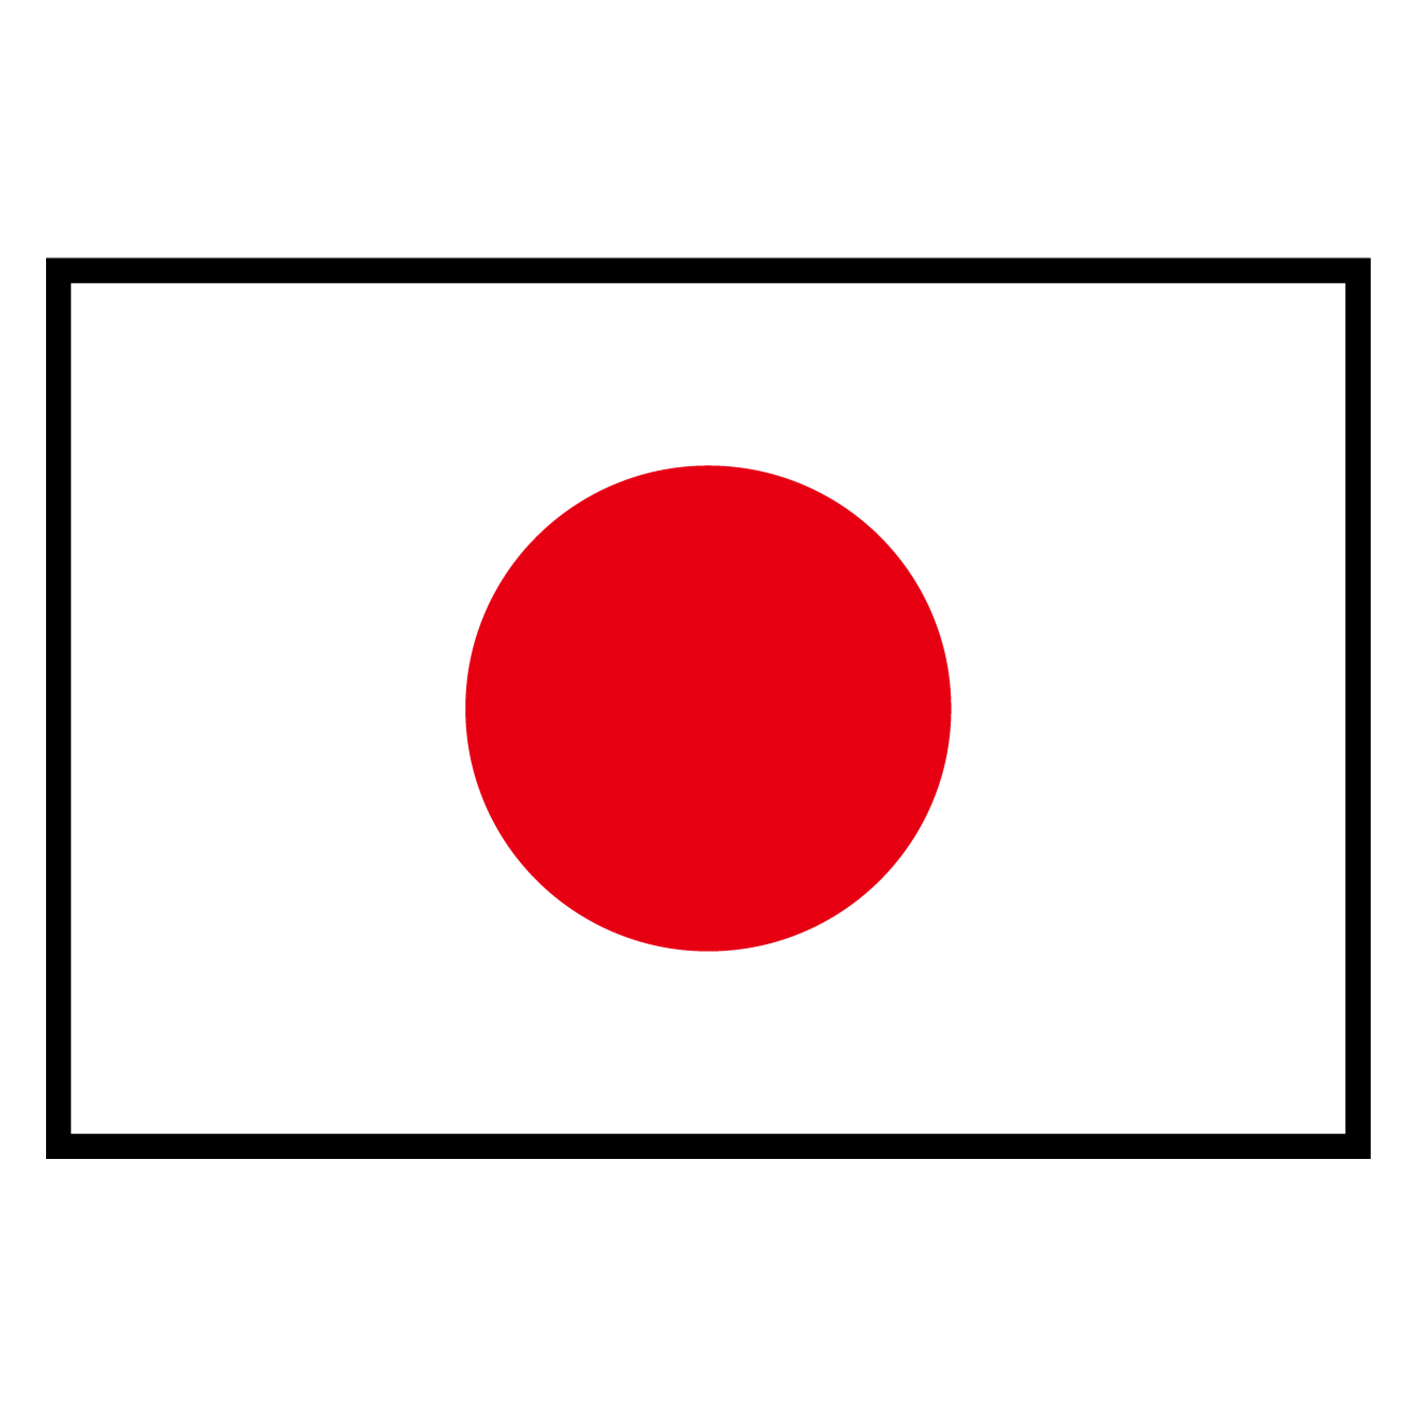 图标显示的是一面日本国旗，表示产品是在日本制造的